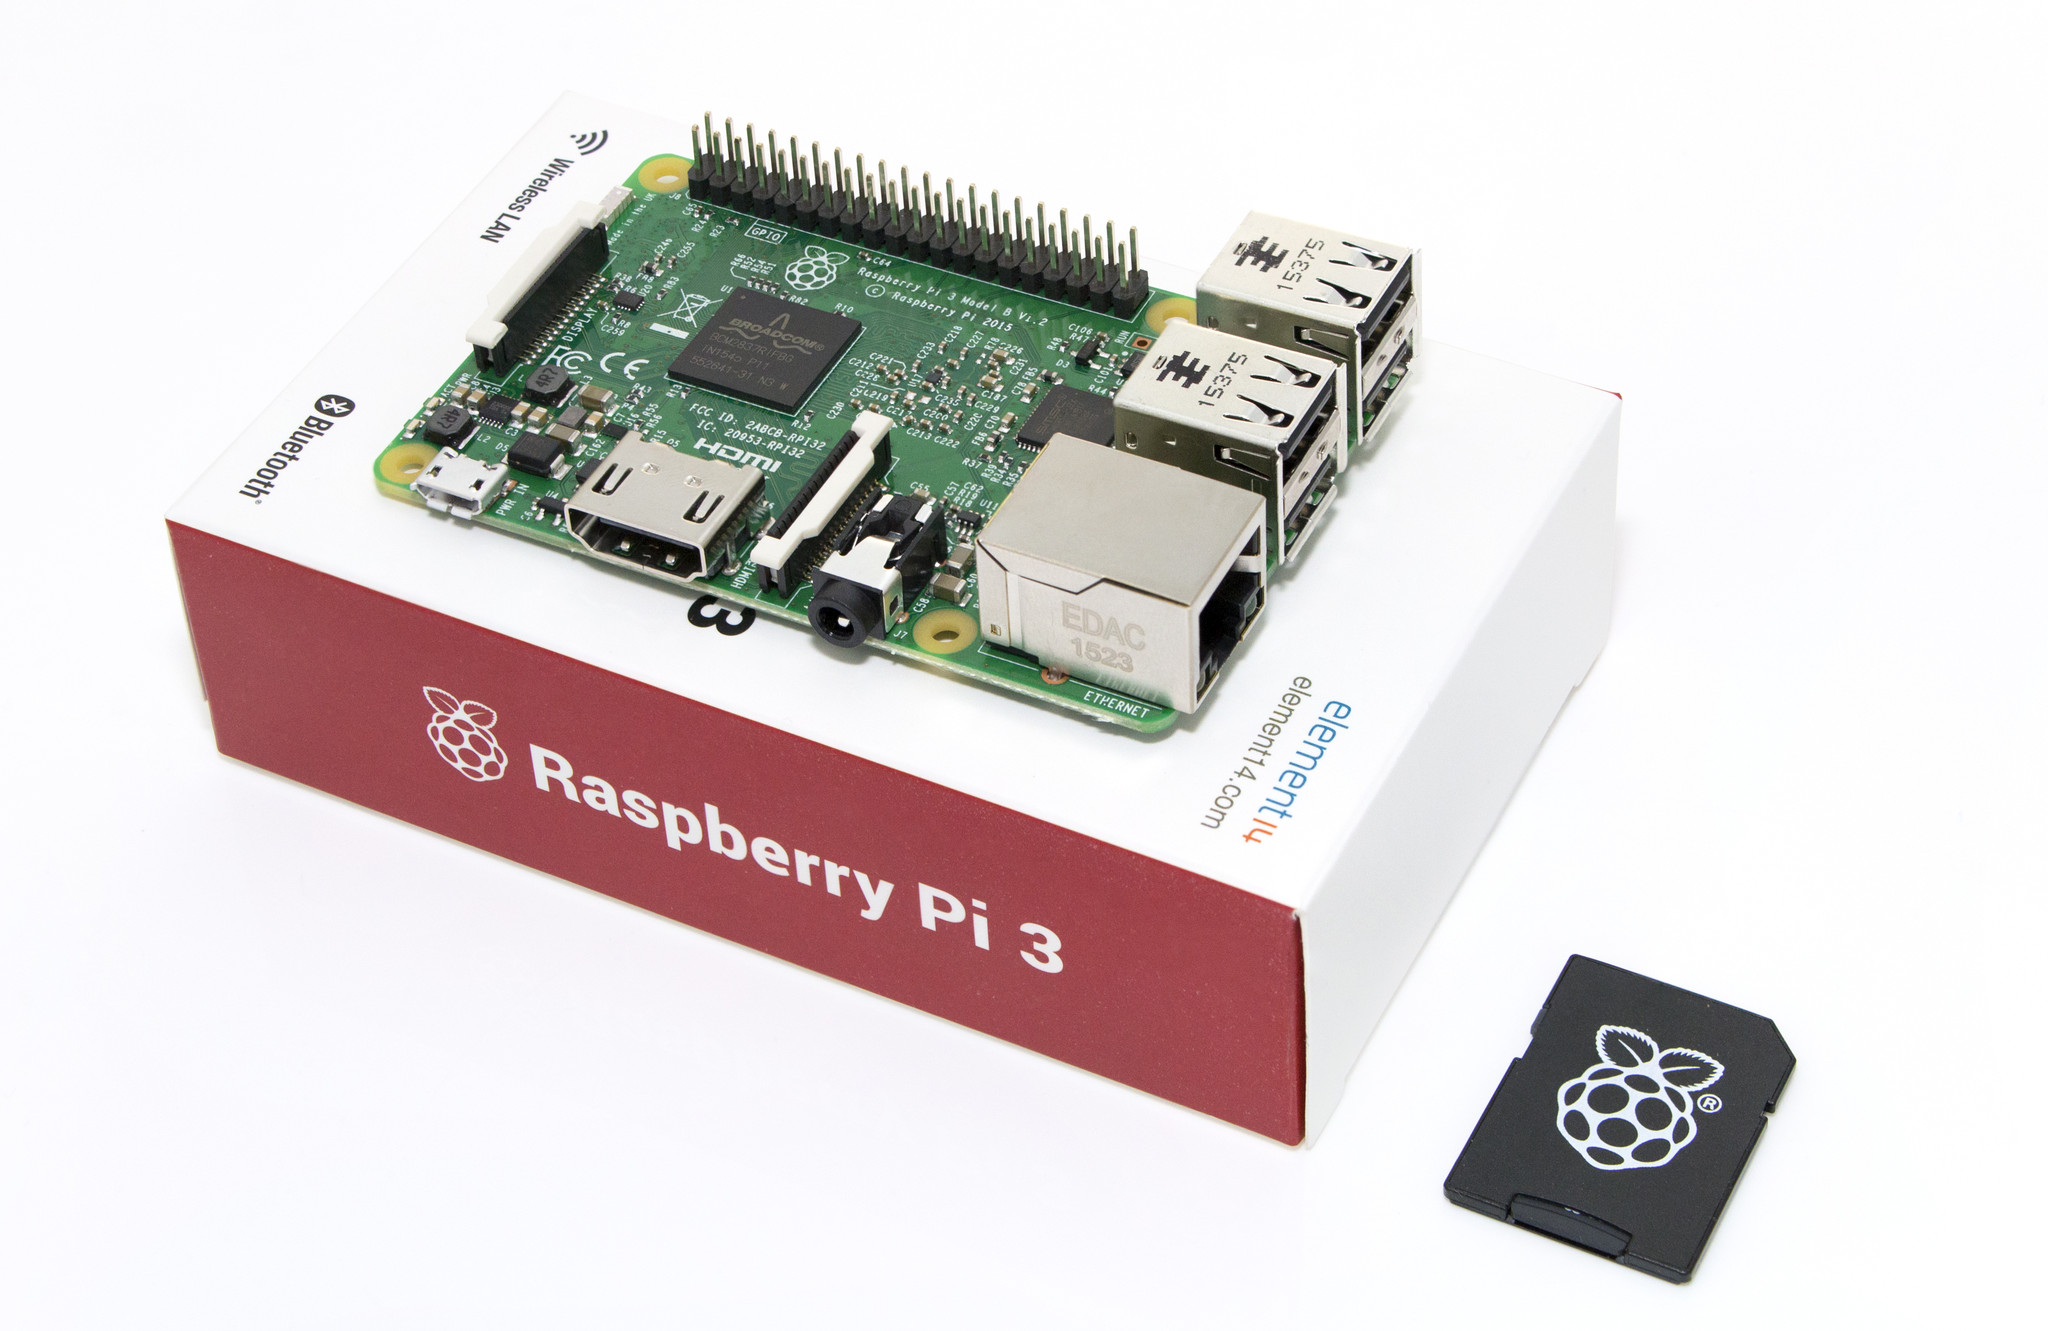 Unboxing Raspberry PI 3 Model B